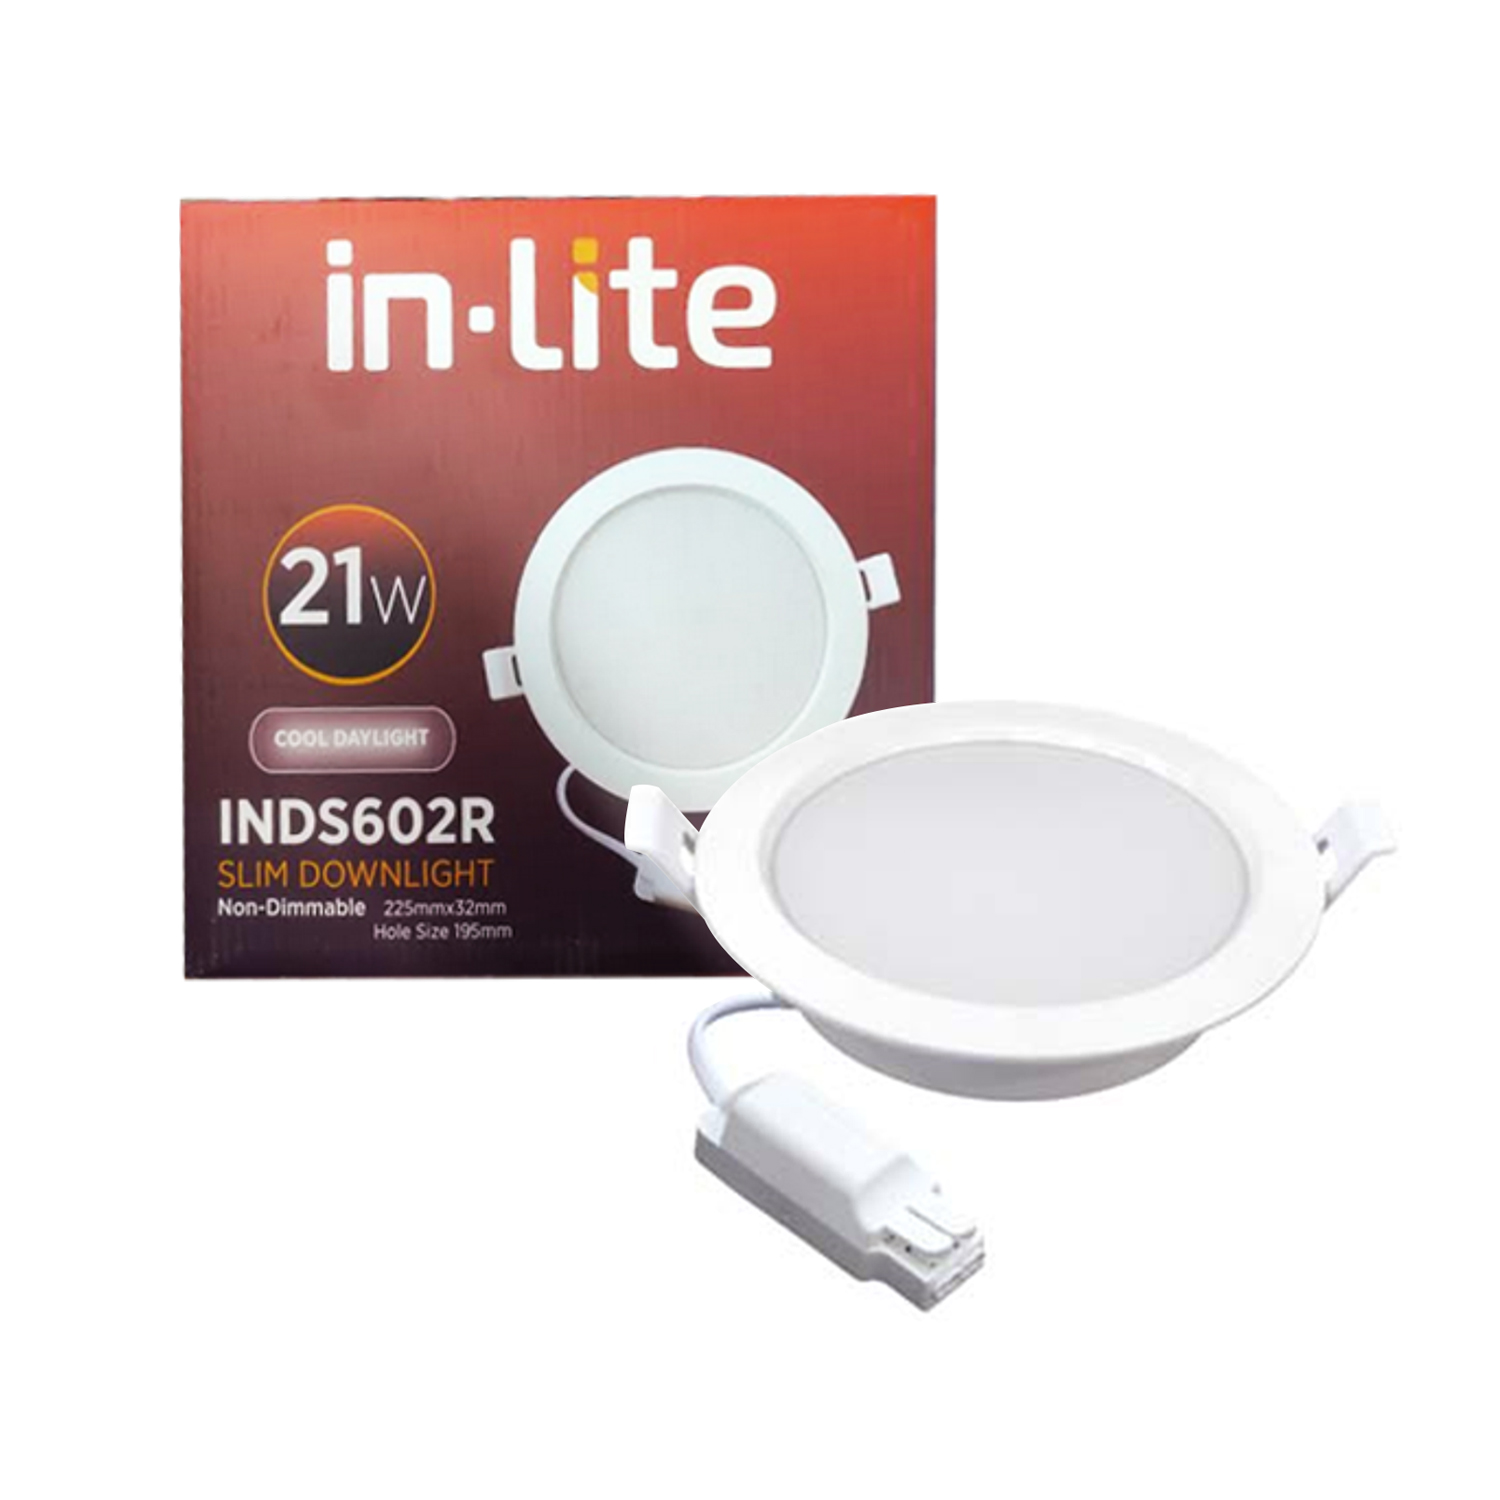 Inlite INDS602R 21W Slim Downlight CD Putih - Bohlam Lampu